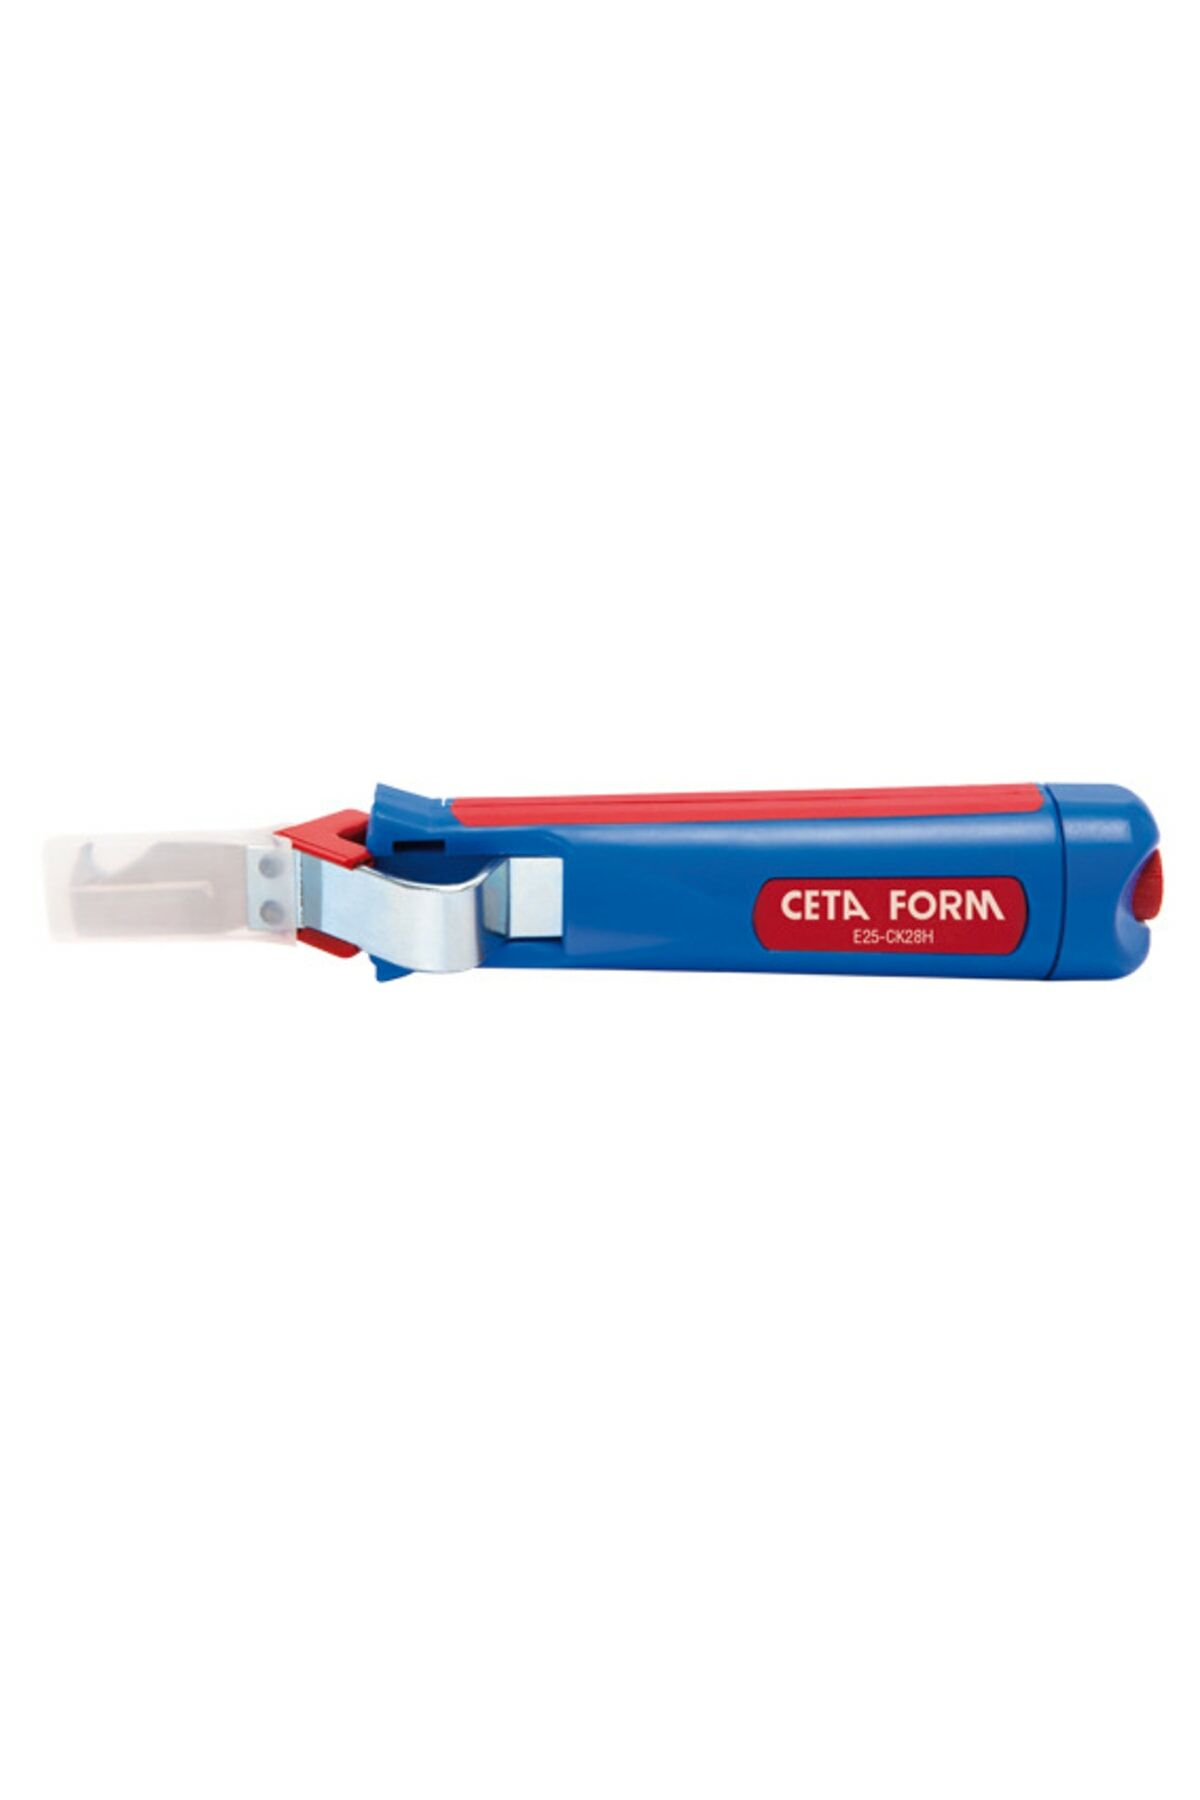 CETAFORM E25-CK28H Kablo Soyma Bıçağı